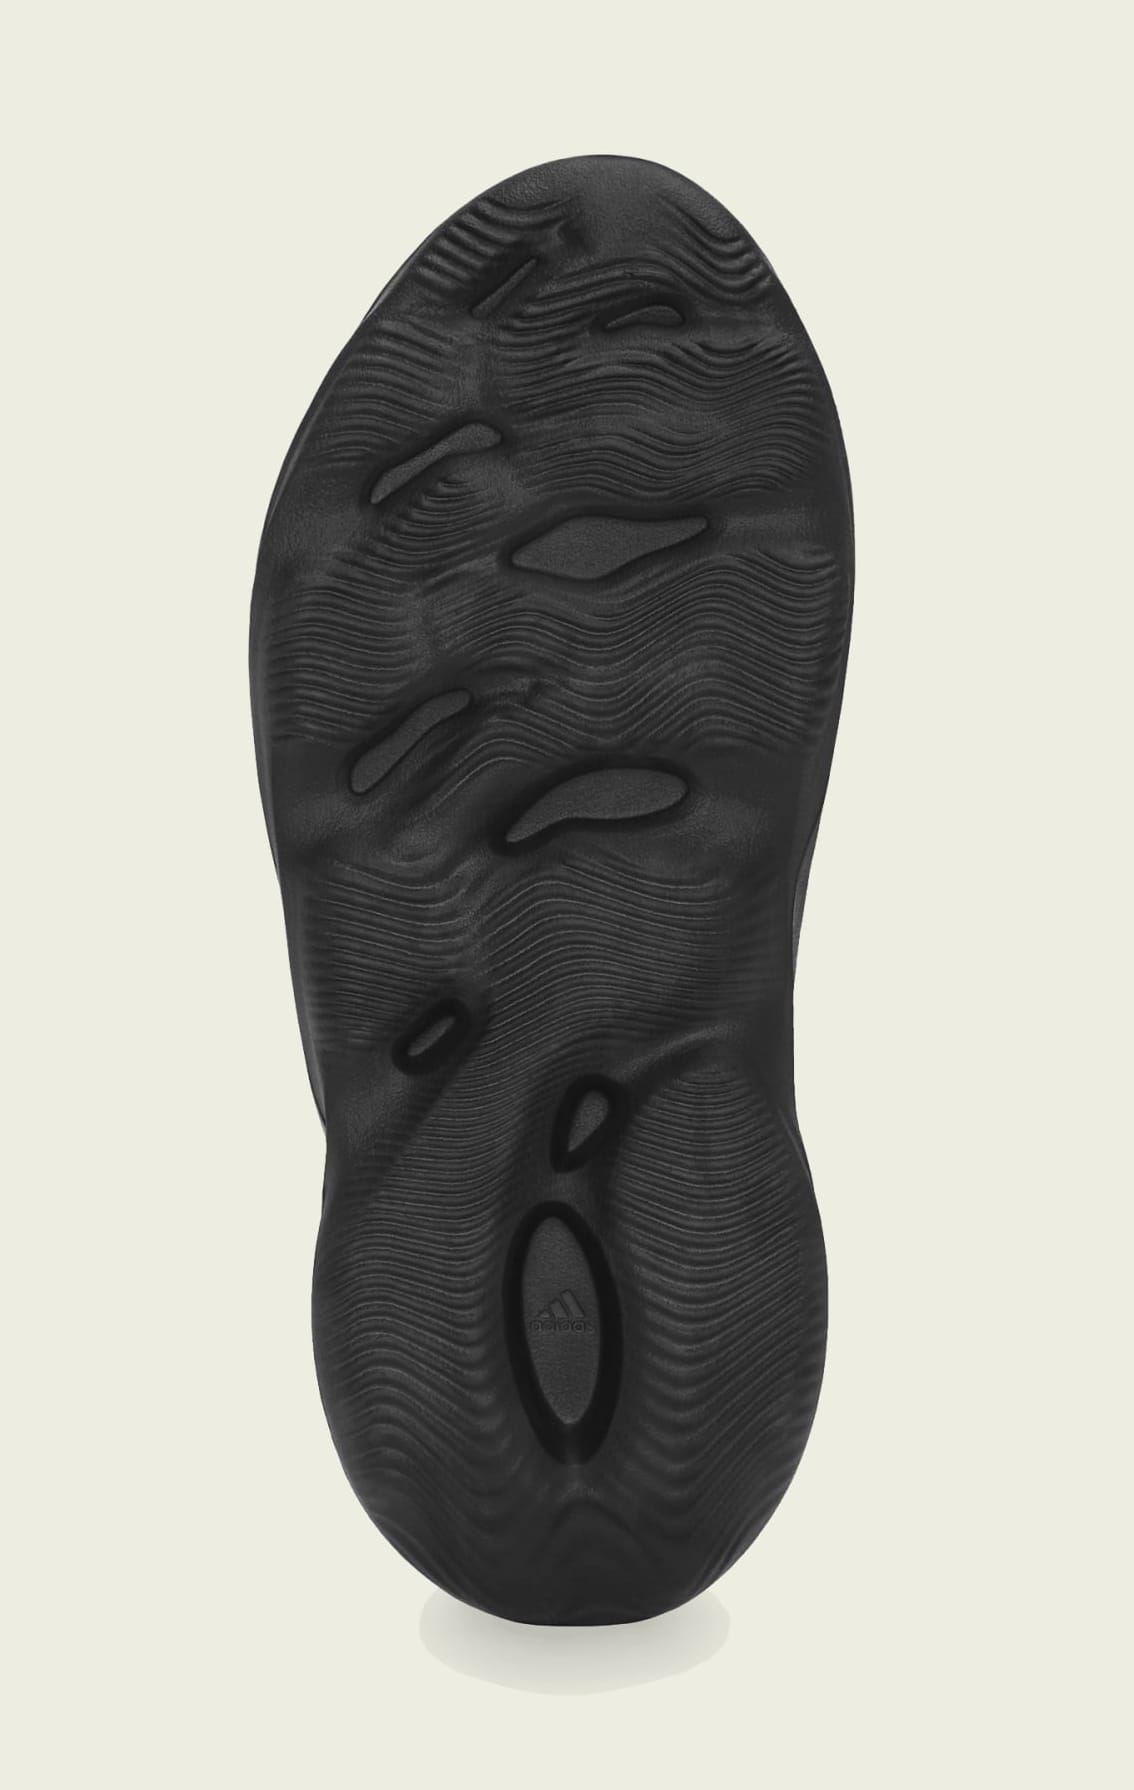 Adidas Yeezy Foam Runner 'Onyx' HP8739 Outsole